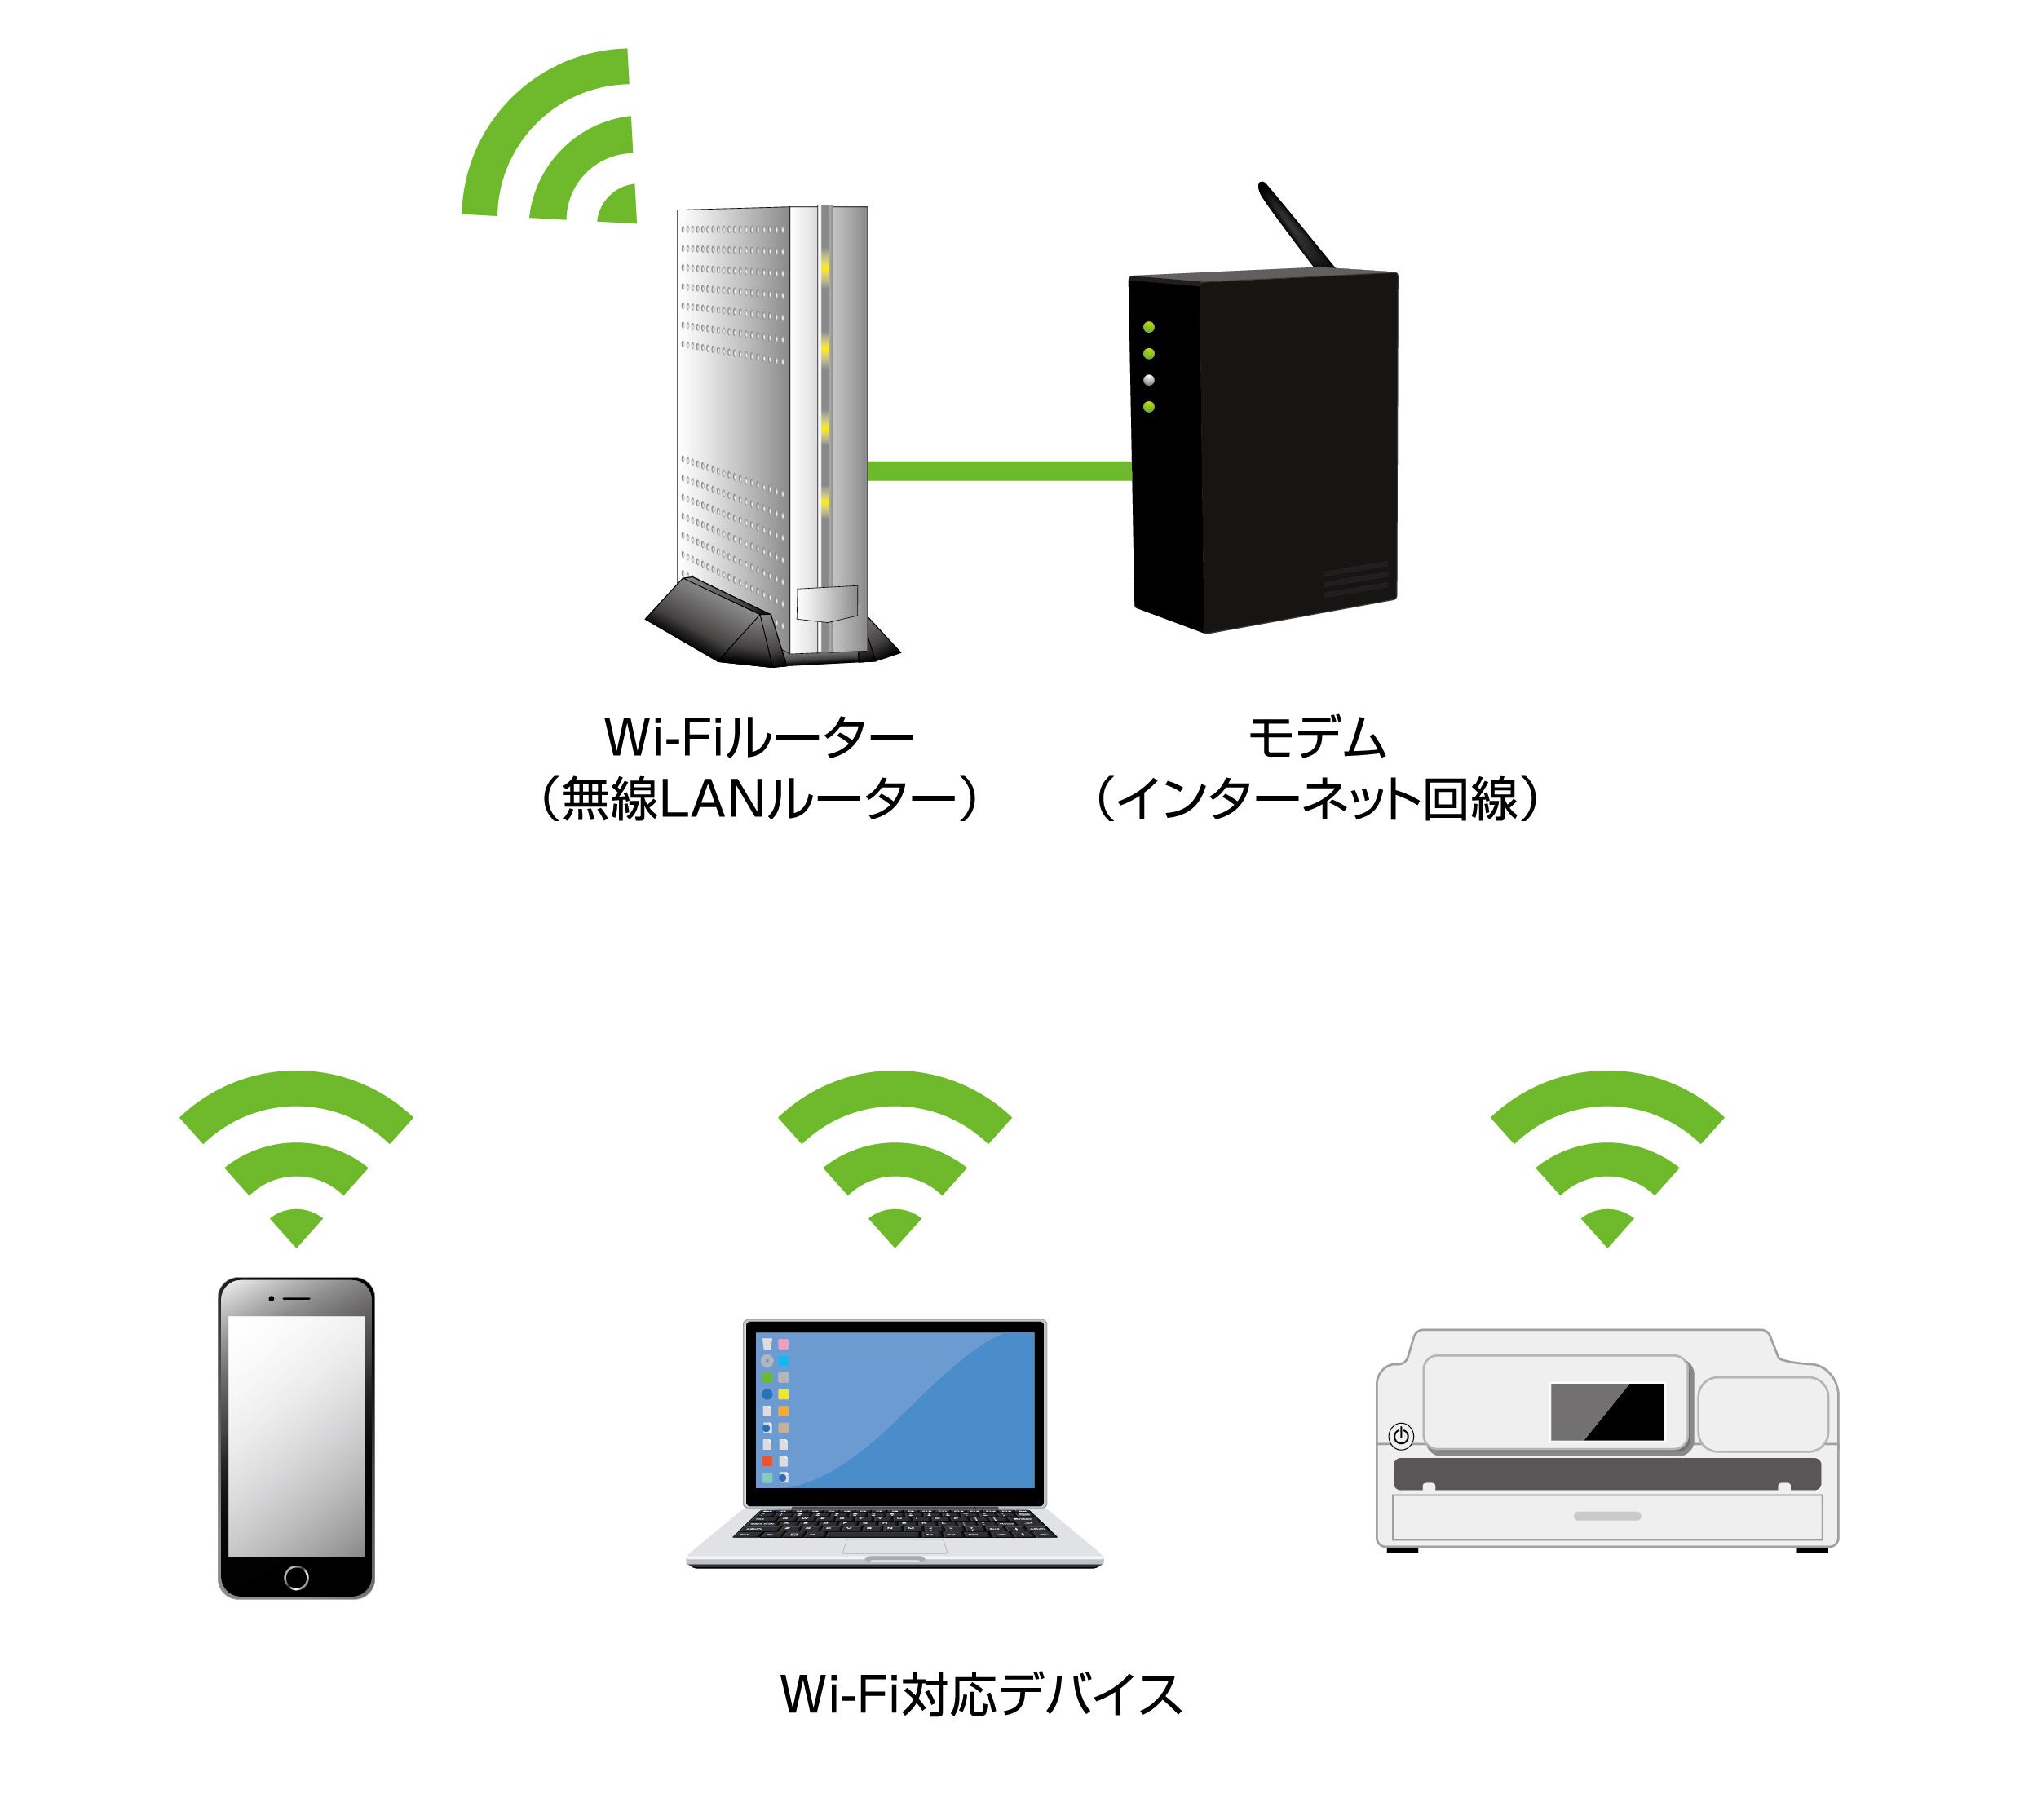 従来のWi-Fiネットワークの仕組み